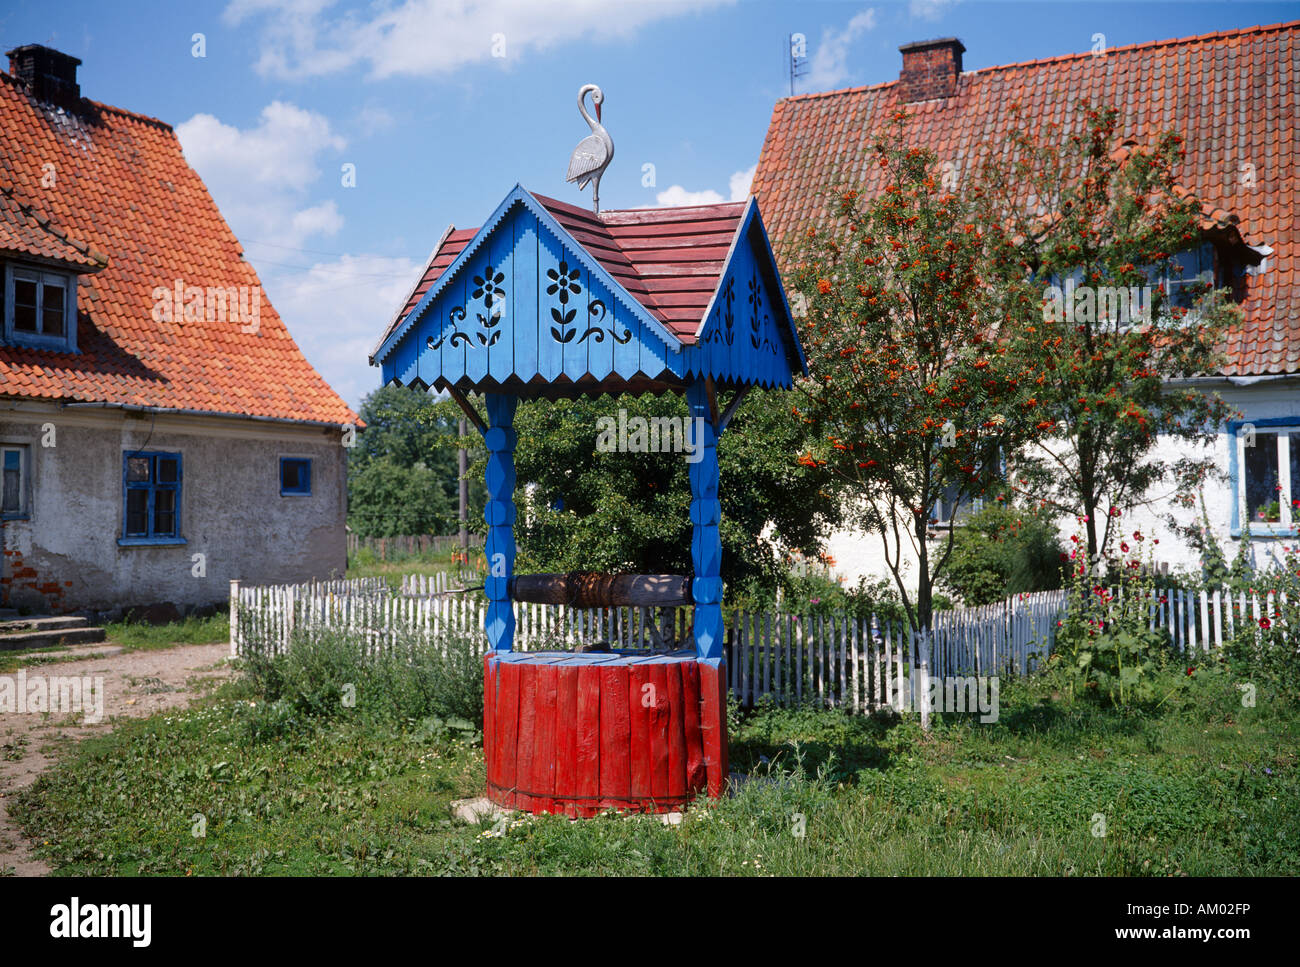 In enclave di Kaliningrad condotti di acqua non sono implicitness. Spesso l'acqua deve essere scaricata in corrispondenza di un tradizionale disegnare bene. Foto Stock